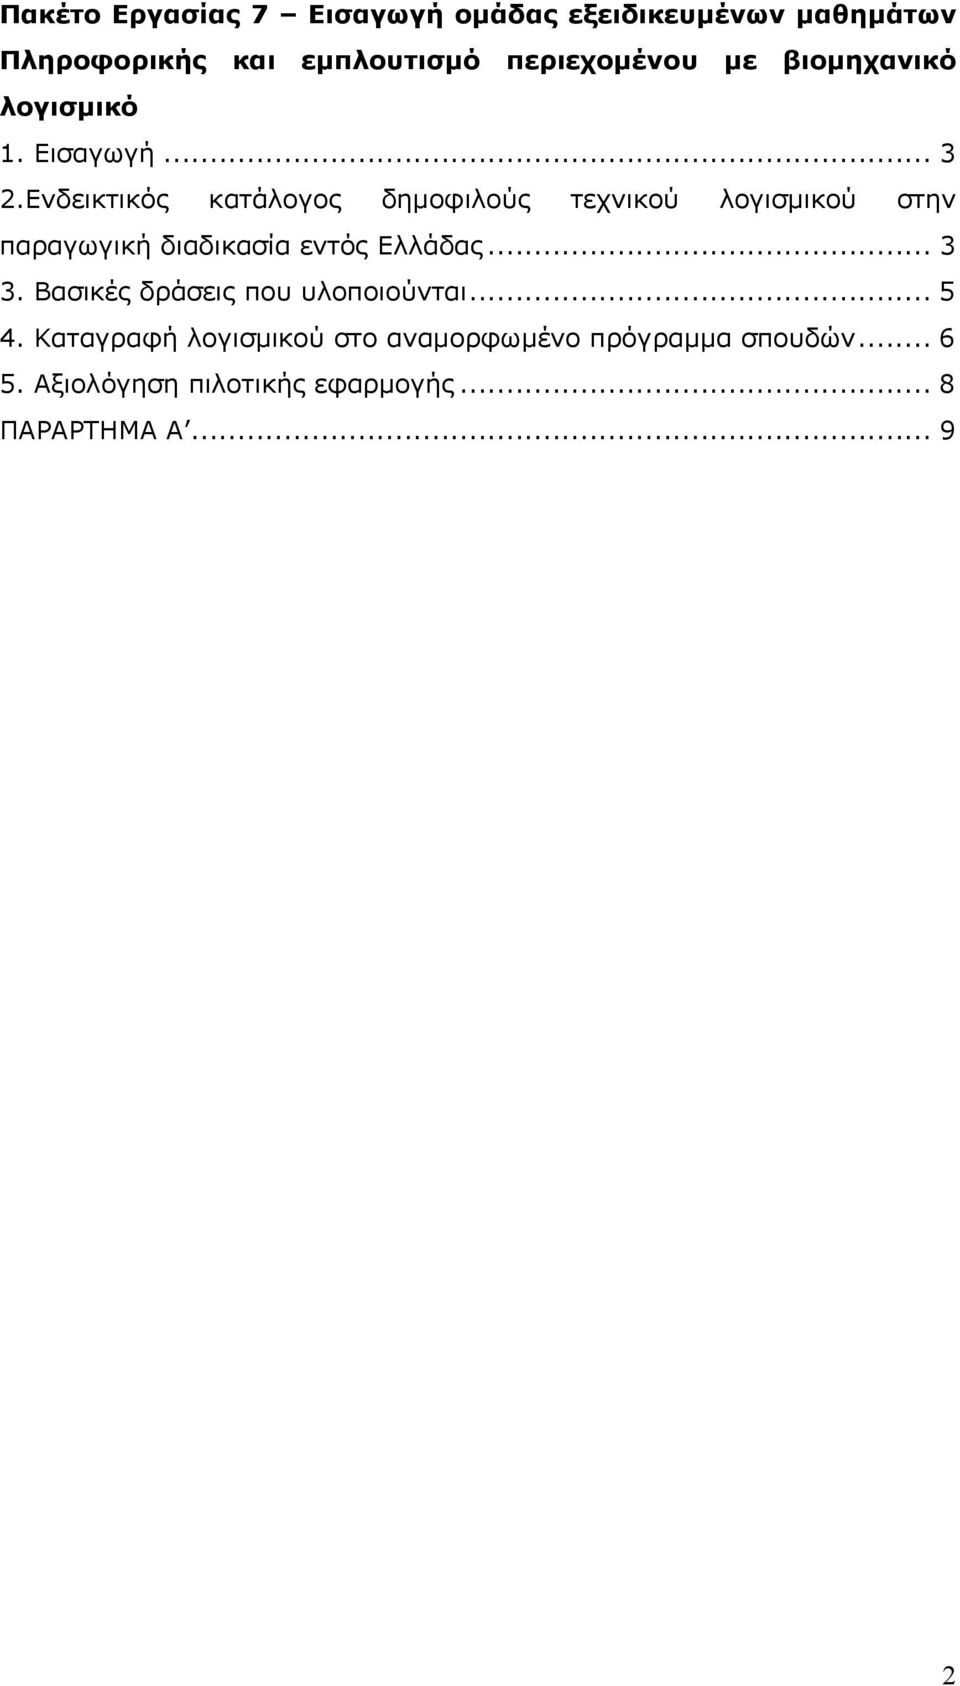 Ενδεικτικός κατάλογος δημοφιλούς τεχνικού λογισμικού στην παραγωγική διαδικασία εντός Ελλάδας... 3 3.